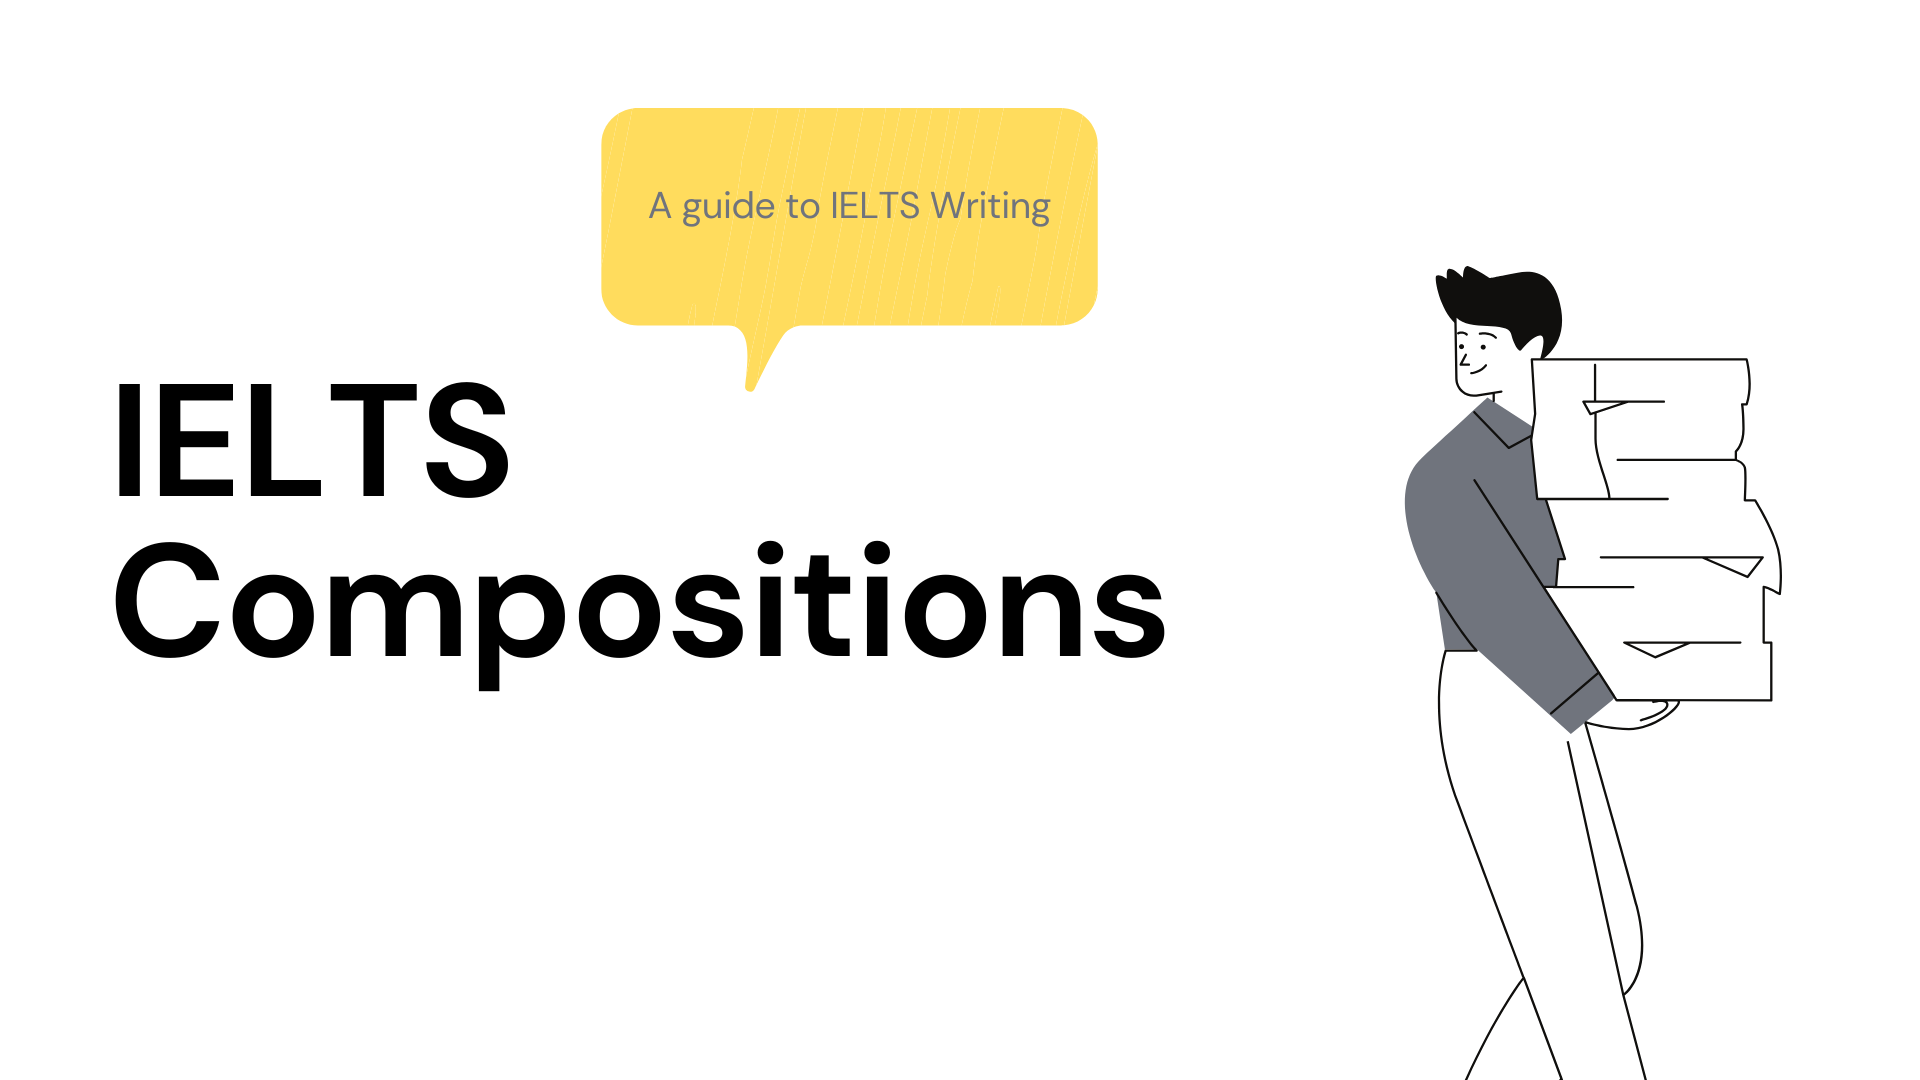 IELTS Compositions